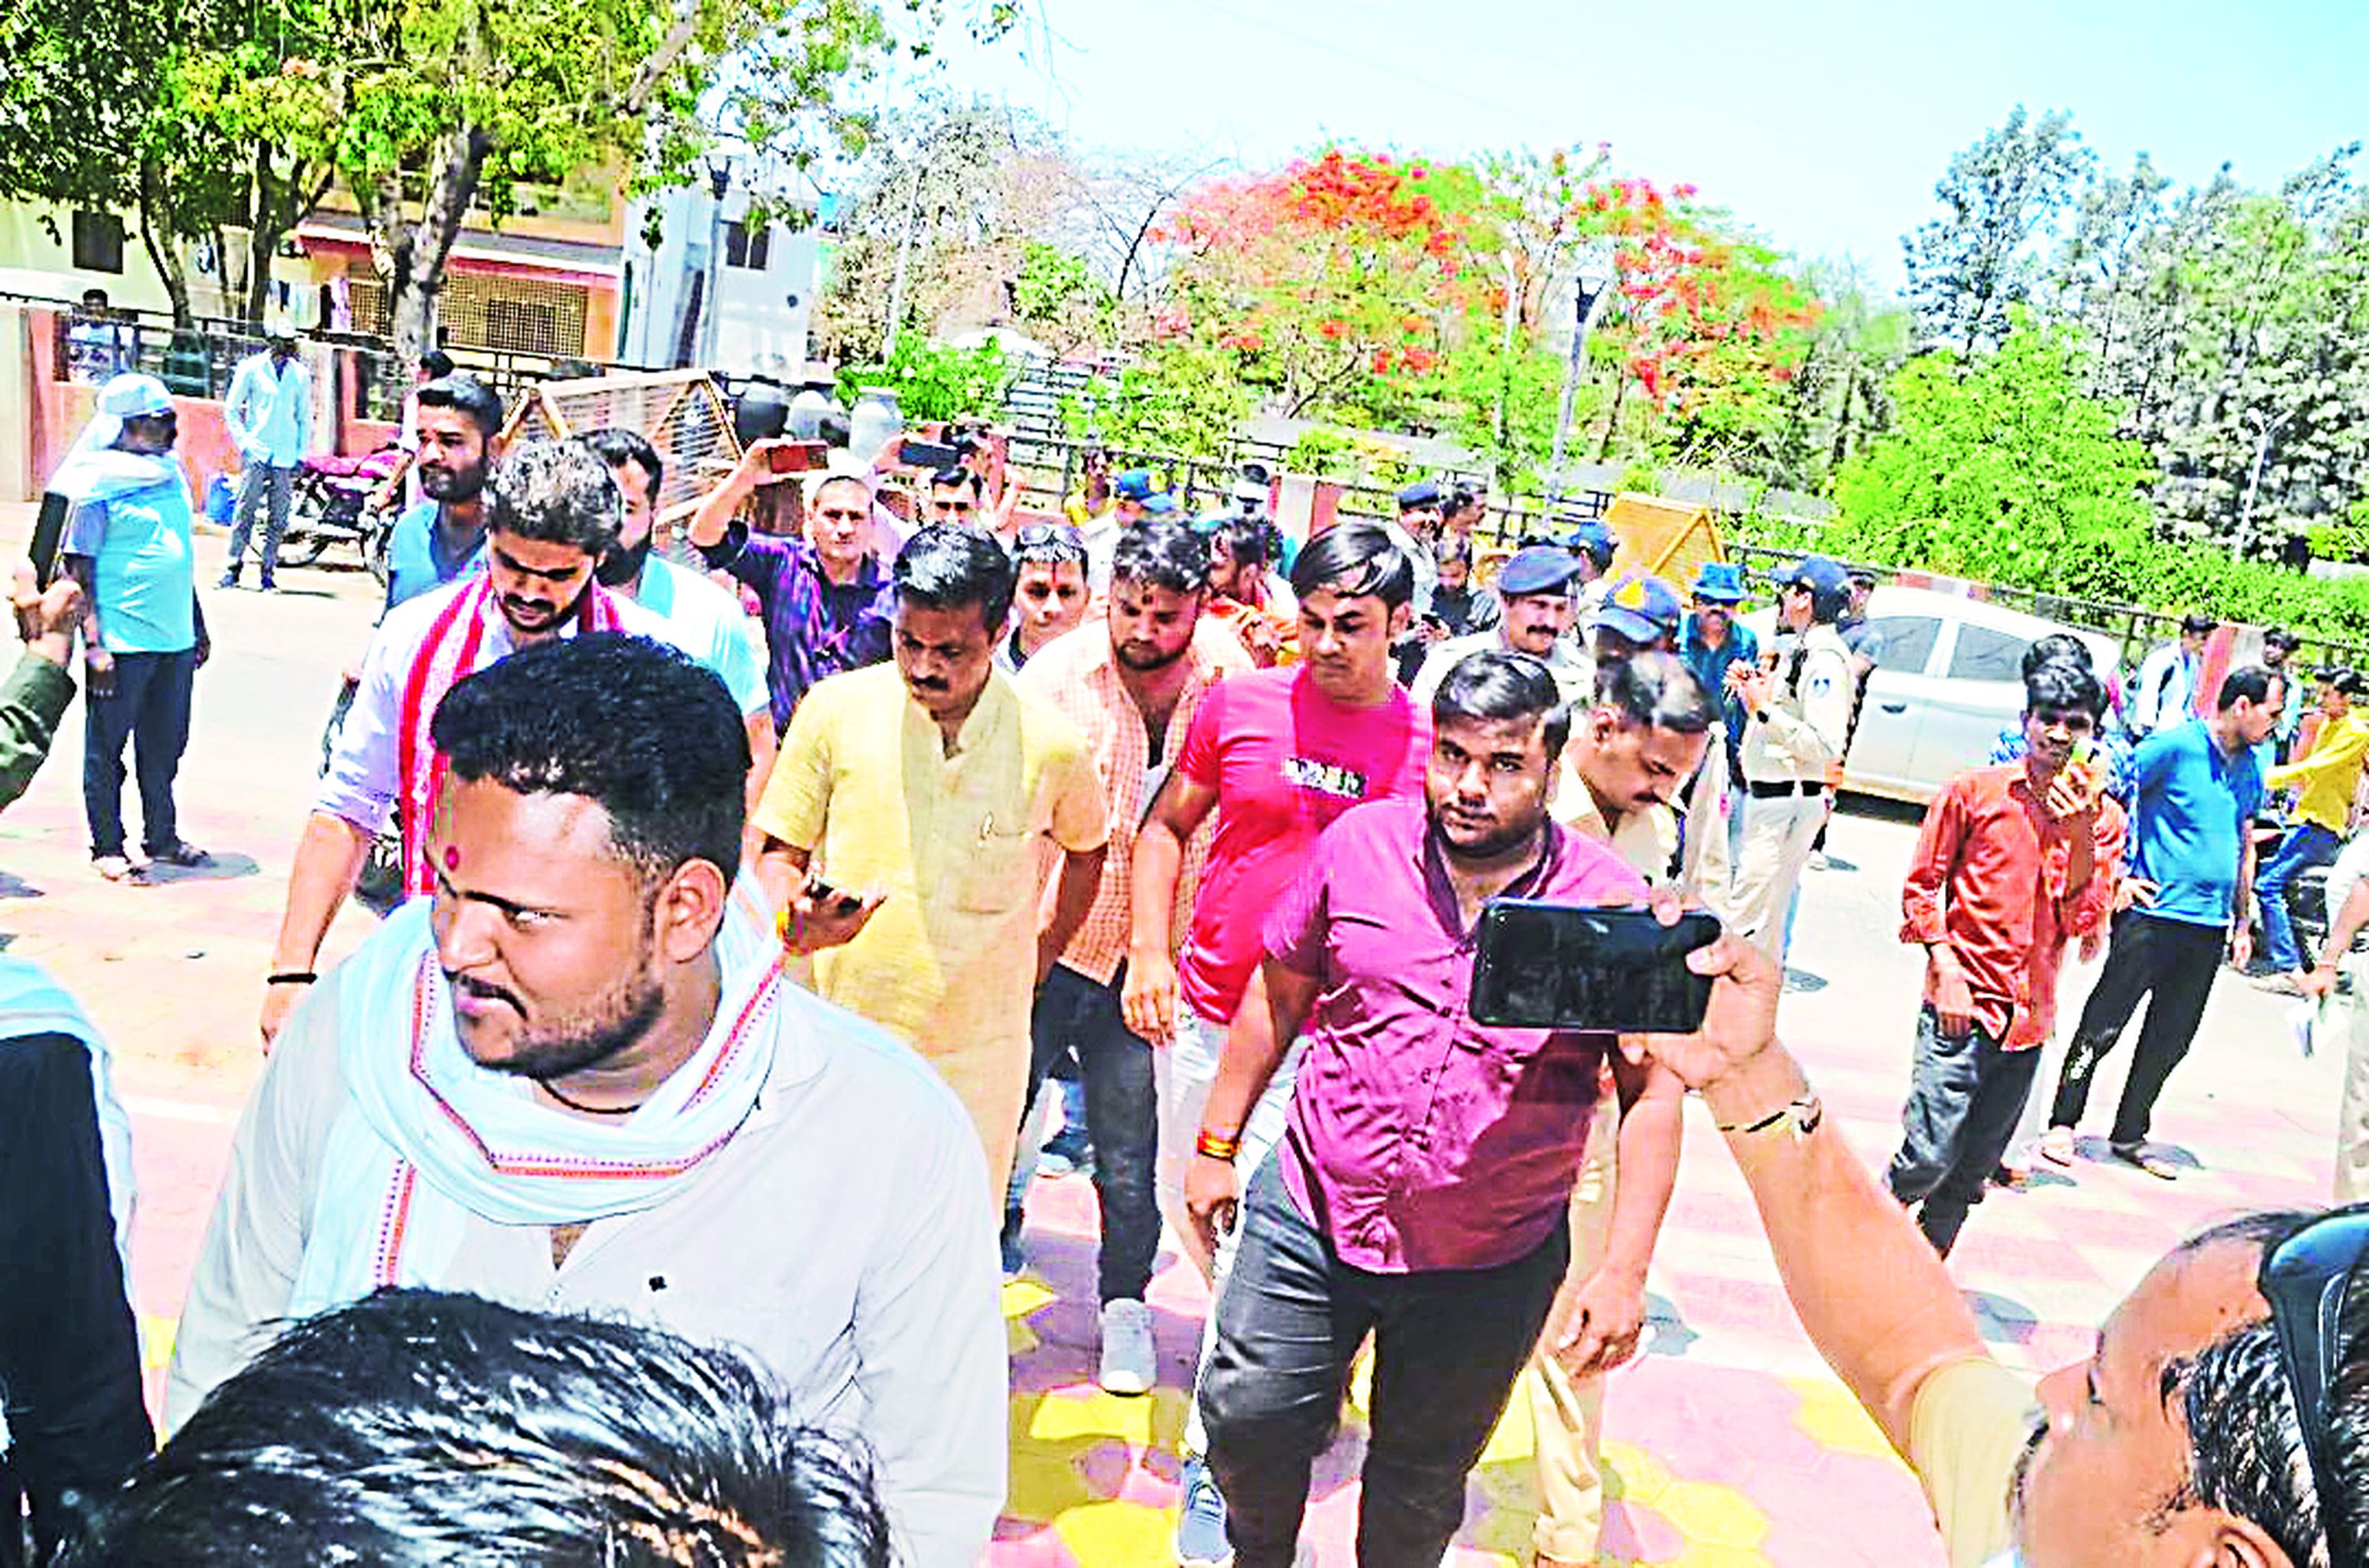 हिंदू संगठनों विरोध: सिविल लाइन थाने के बाहर किया हंगामा, थाना घेरा